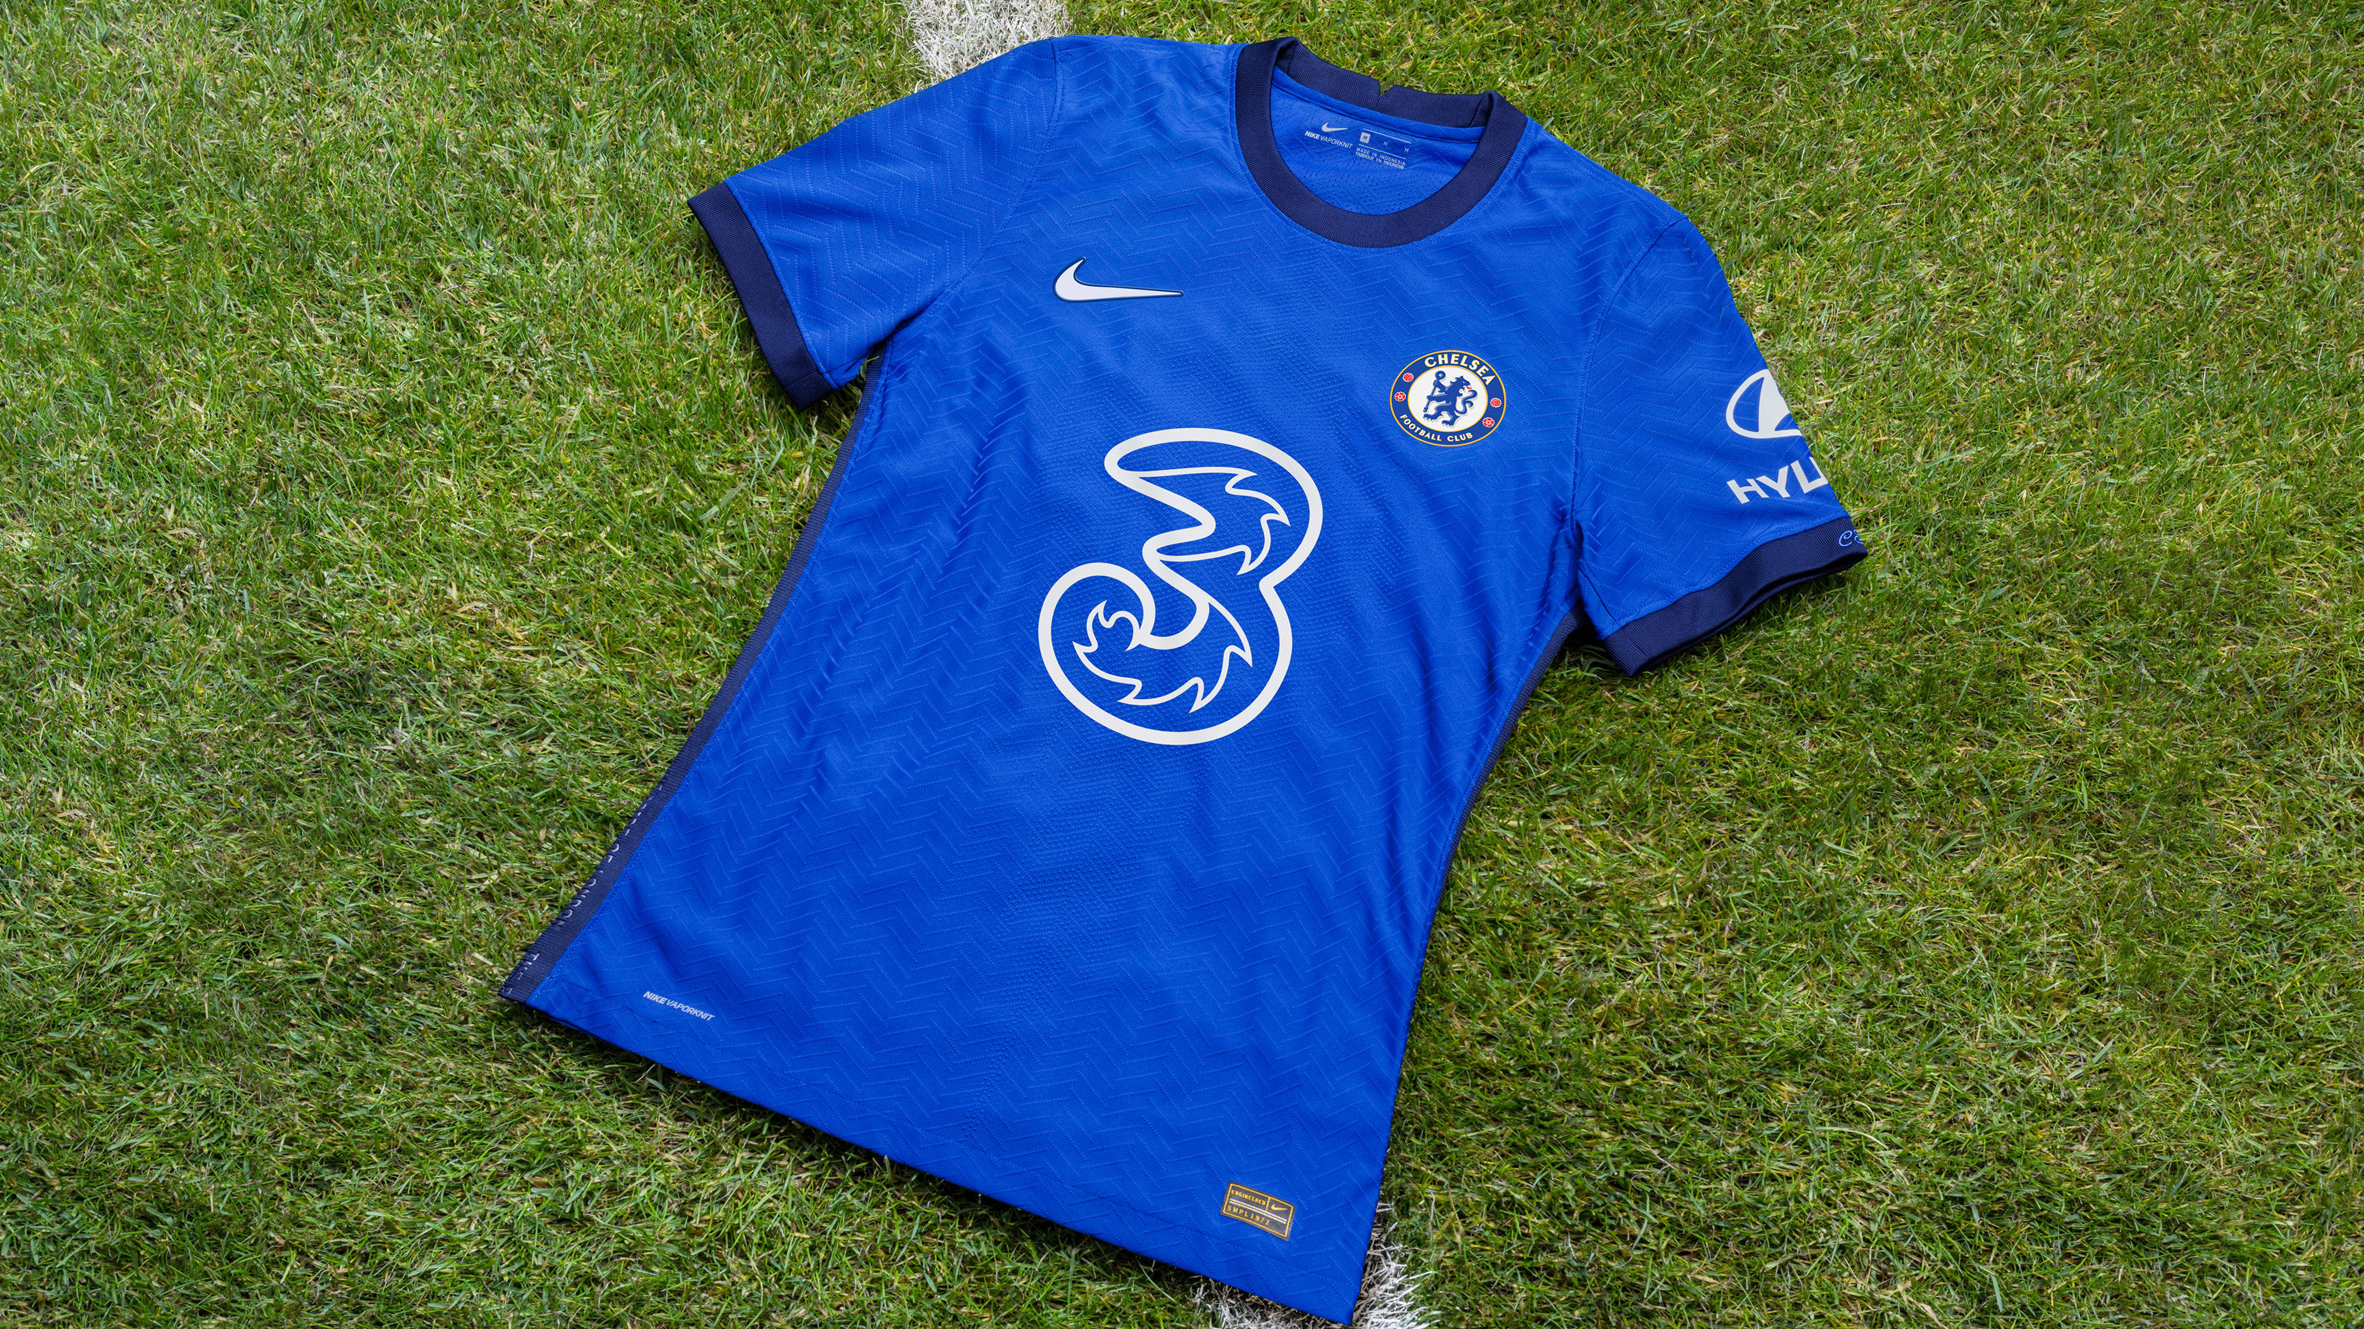 Onrustig Uitgaan Frustrerend Nike reveals herringbone-patterned Chelsea kit informed by Saville Row